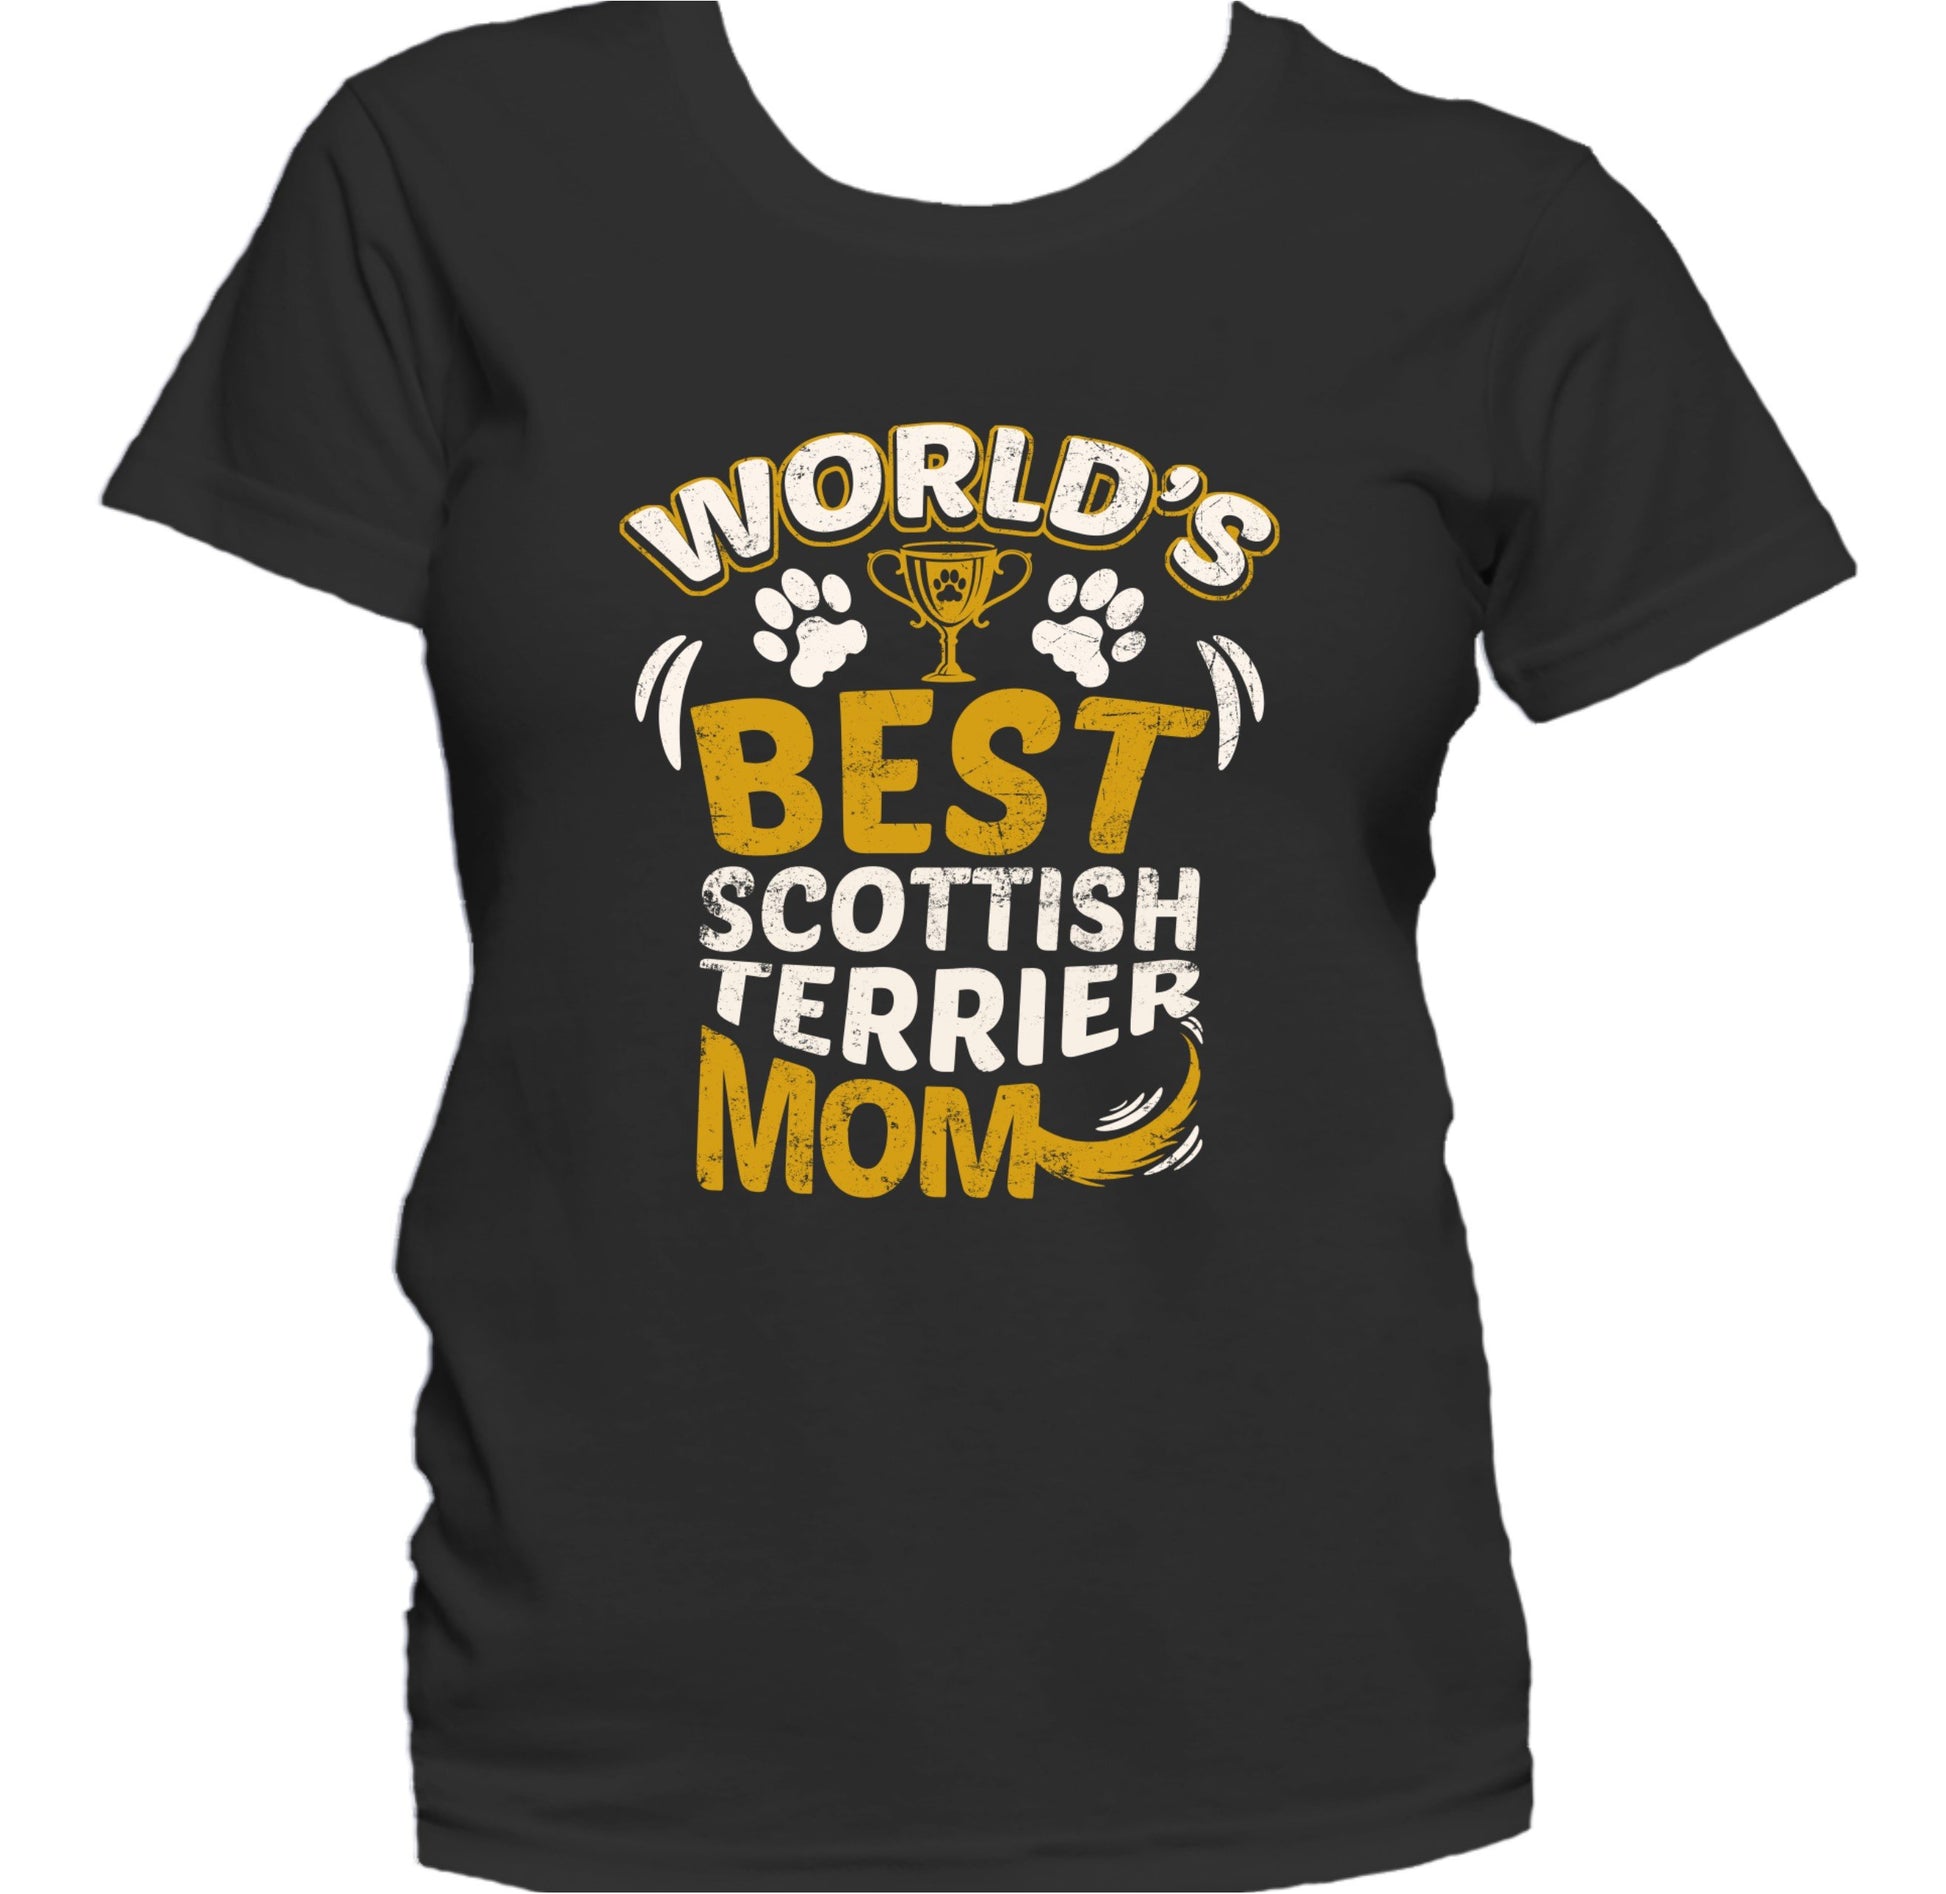 World's Best Scottish Terrier Mom Women's T-Shirt